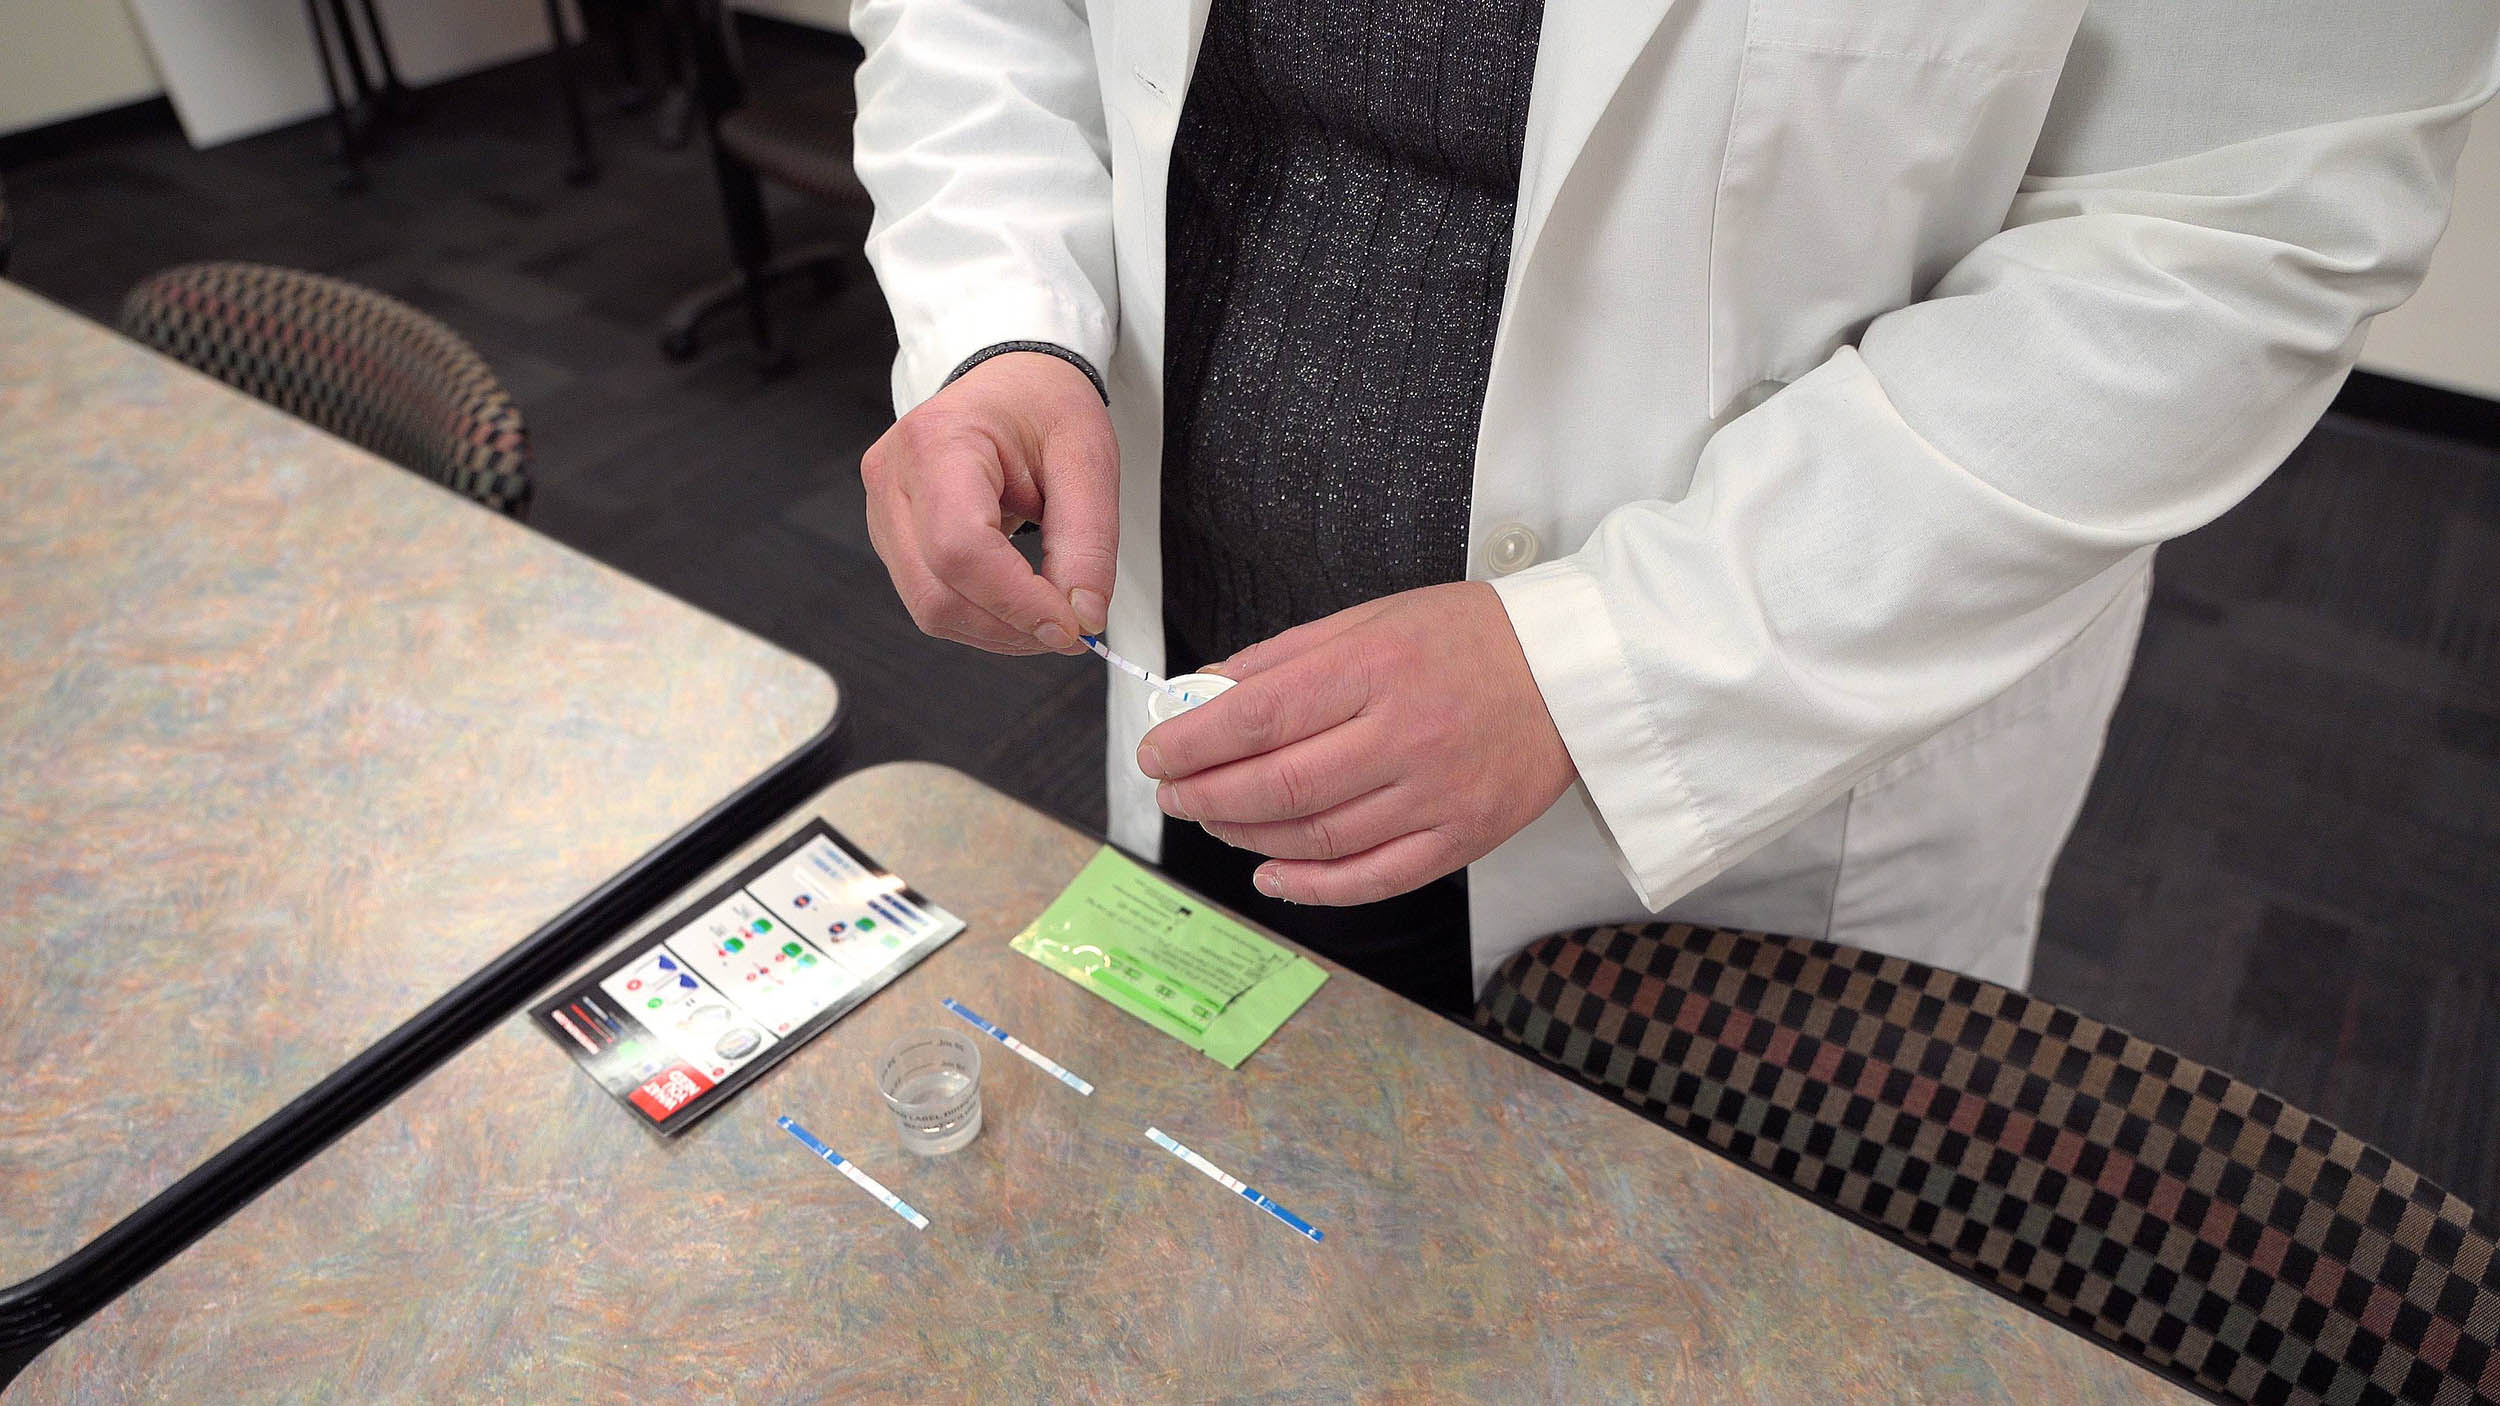 Um profissional médico exibindo uma tira de teste de fentanil